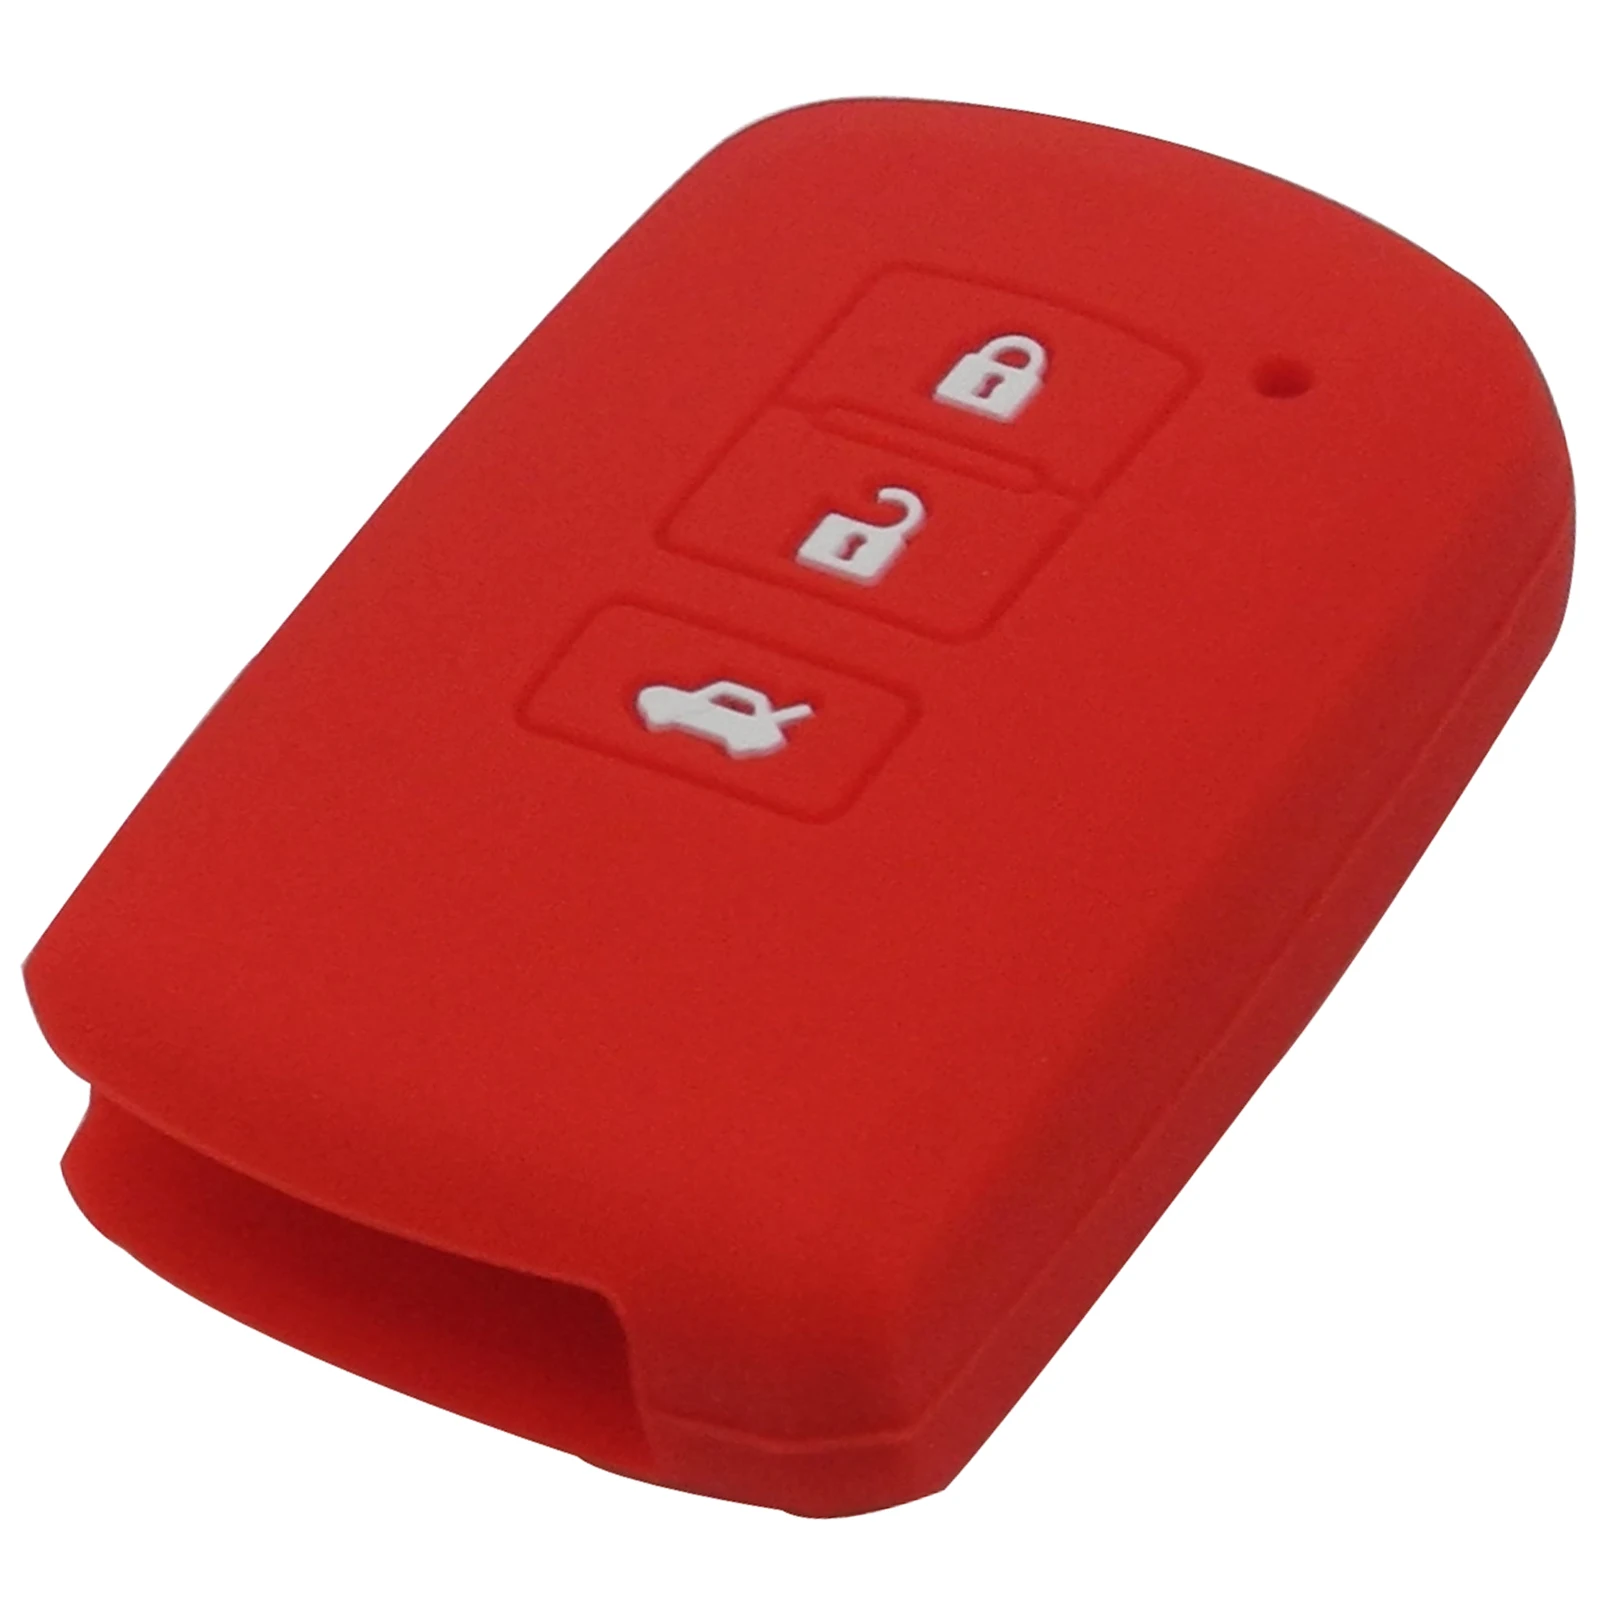 Jingyuqin силиконовый смарт-чехол для ключа для Toyota Camry 7 Highlander 3 кнопки Чехол для автомобильного смарт-ключа - Количество кнопок: Red